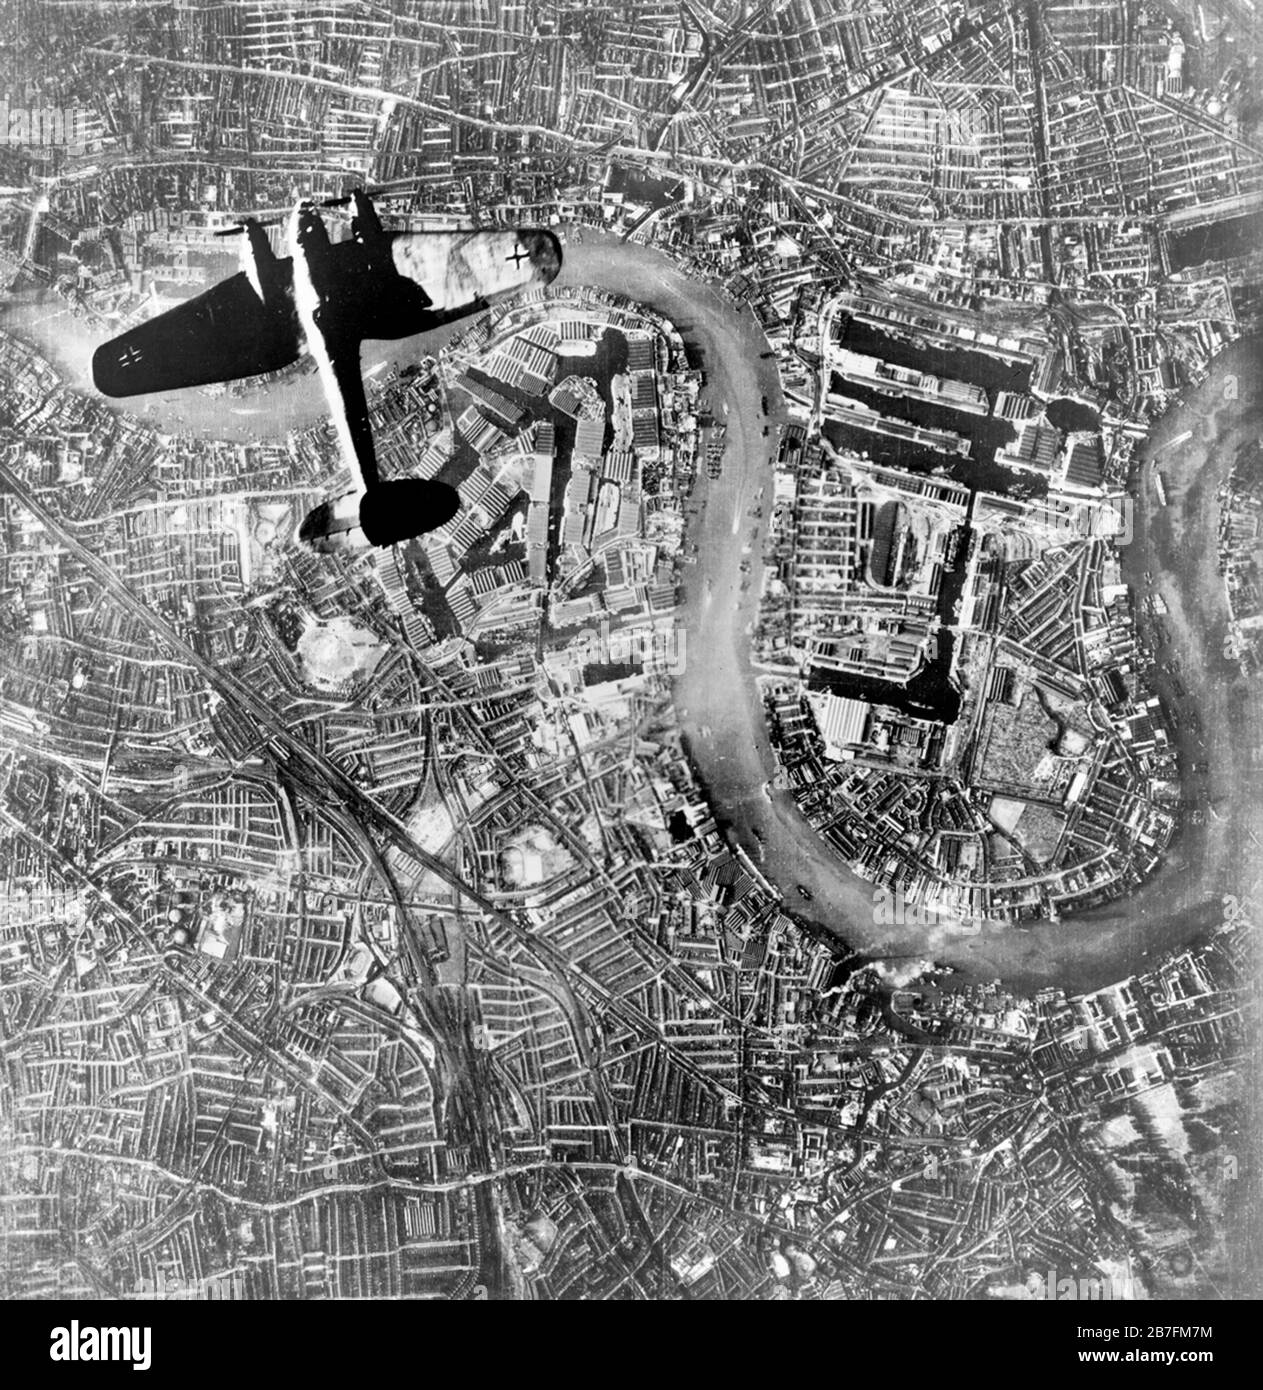 Heinkel Over Wapping - UN bombardiere tedesco Luftwaffe Heinkel He 111 che sorvolò Wapping e l'Isola dei cani nell'East End di Londra all'inizio delle incursioni serali di Luftwaffe del 7 settembre 1940. Foto Stock